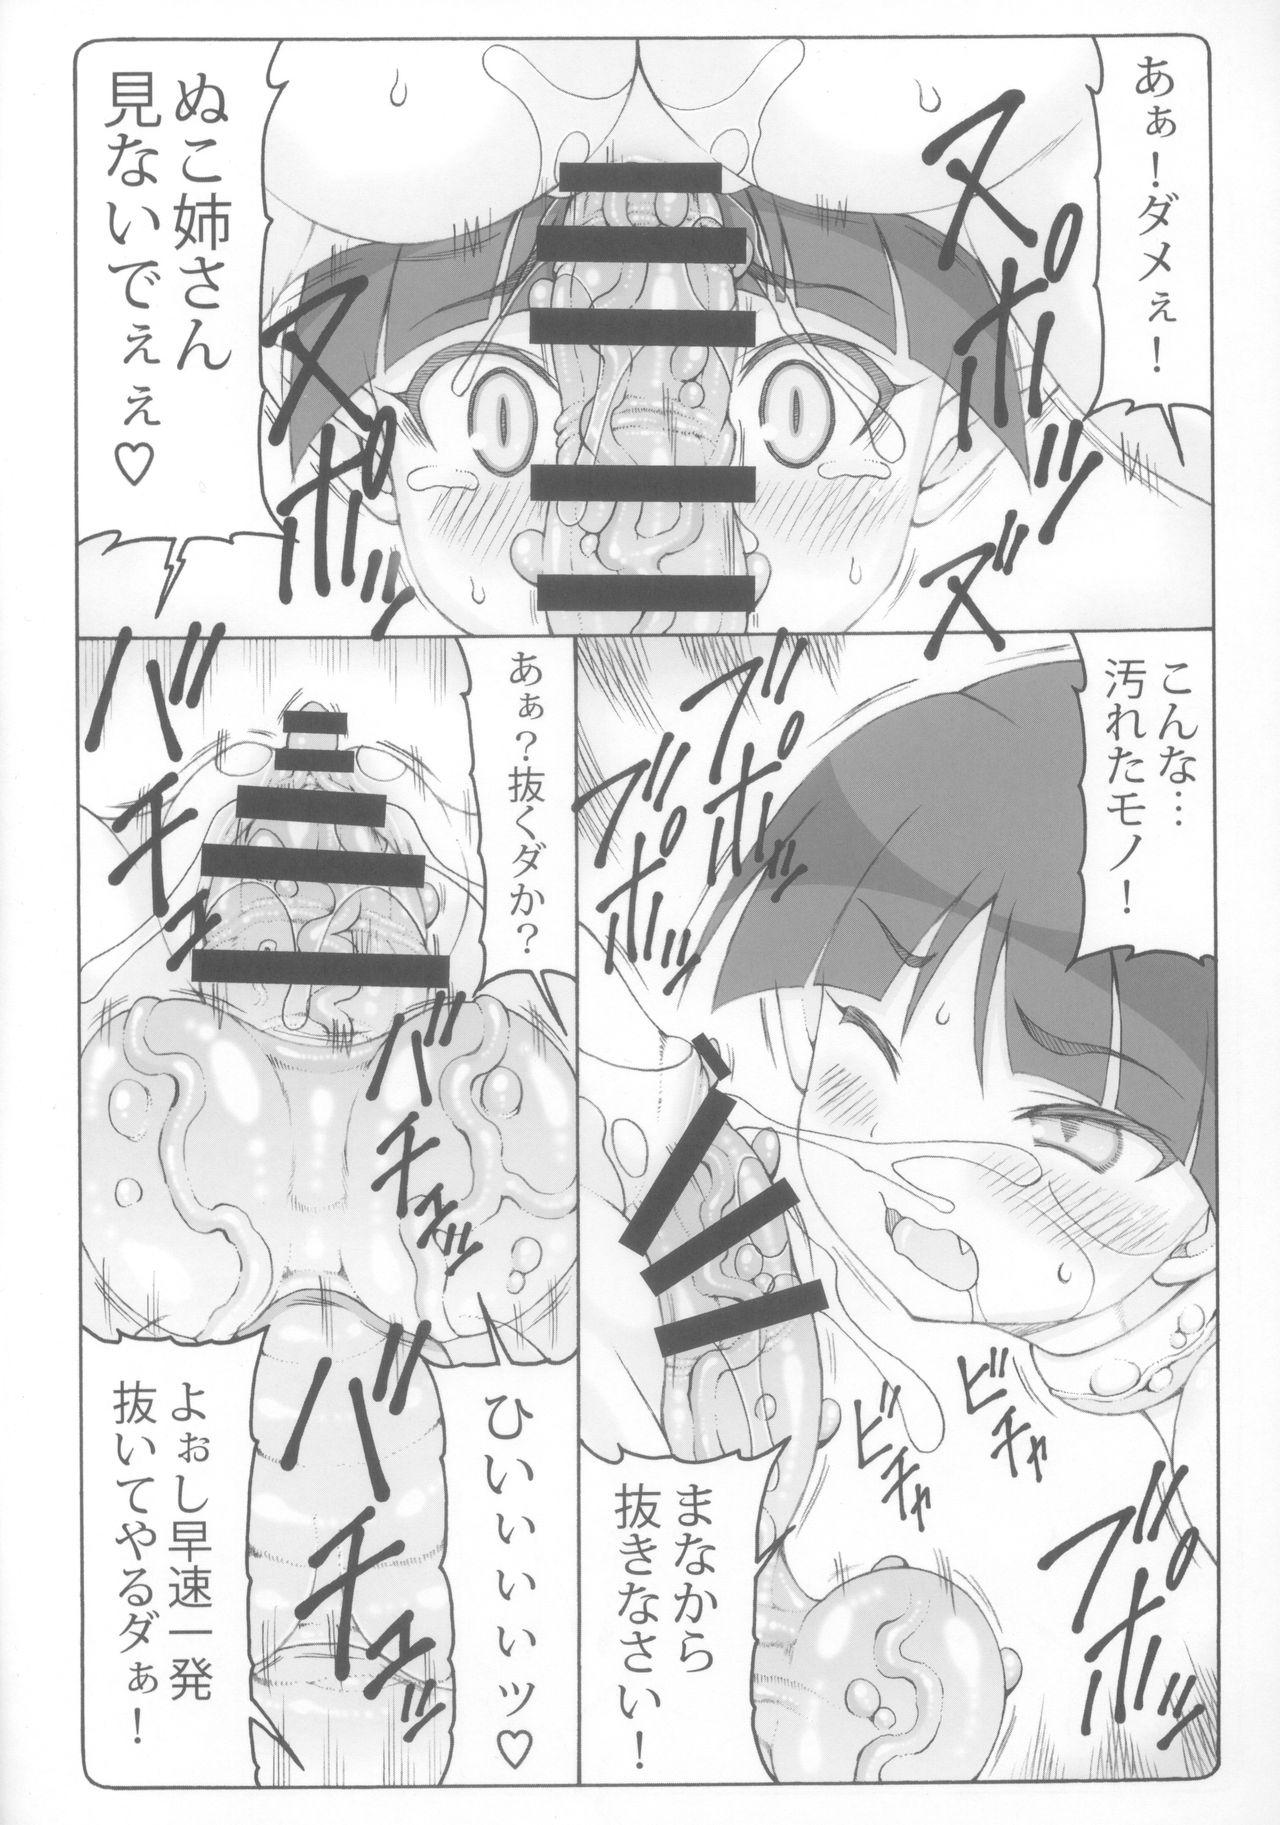 Pounded Nuko Musume vs Youkai Shirikabe 2 - Gegege no kitarou Swallow - Page 12